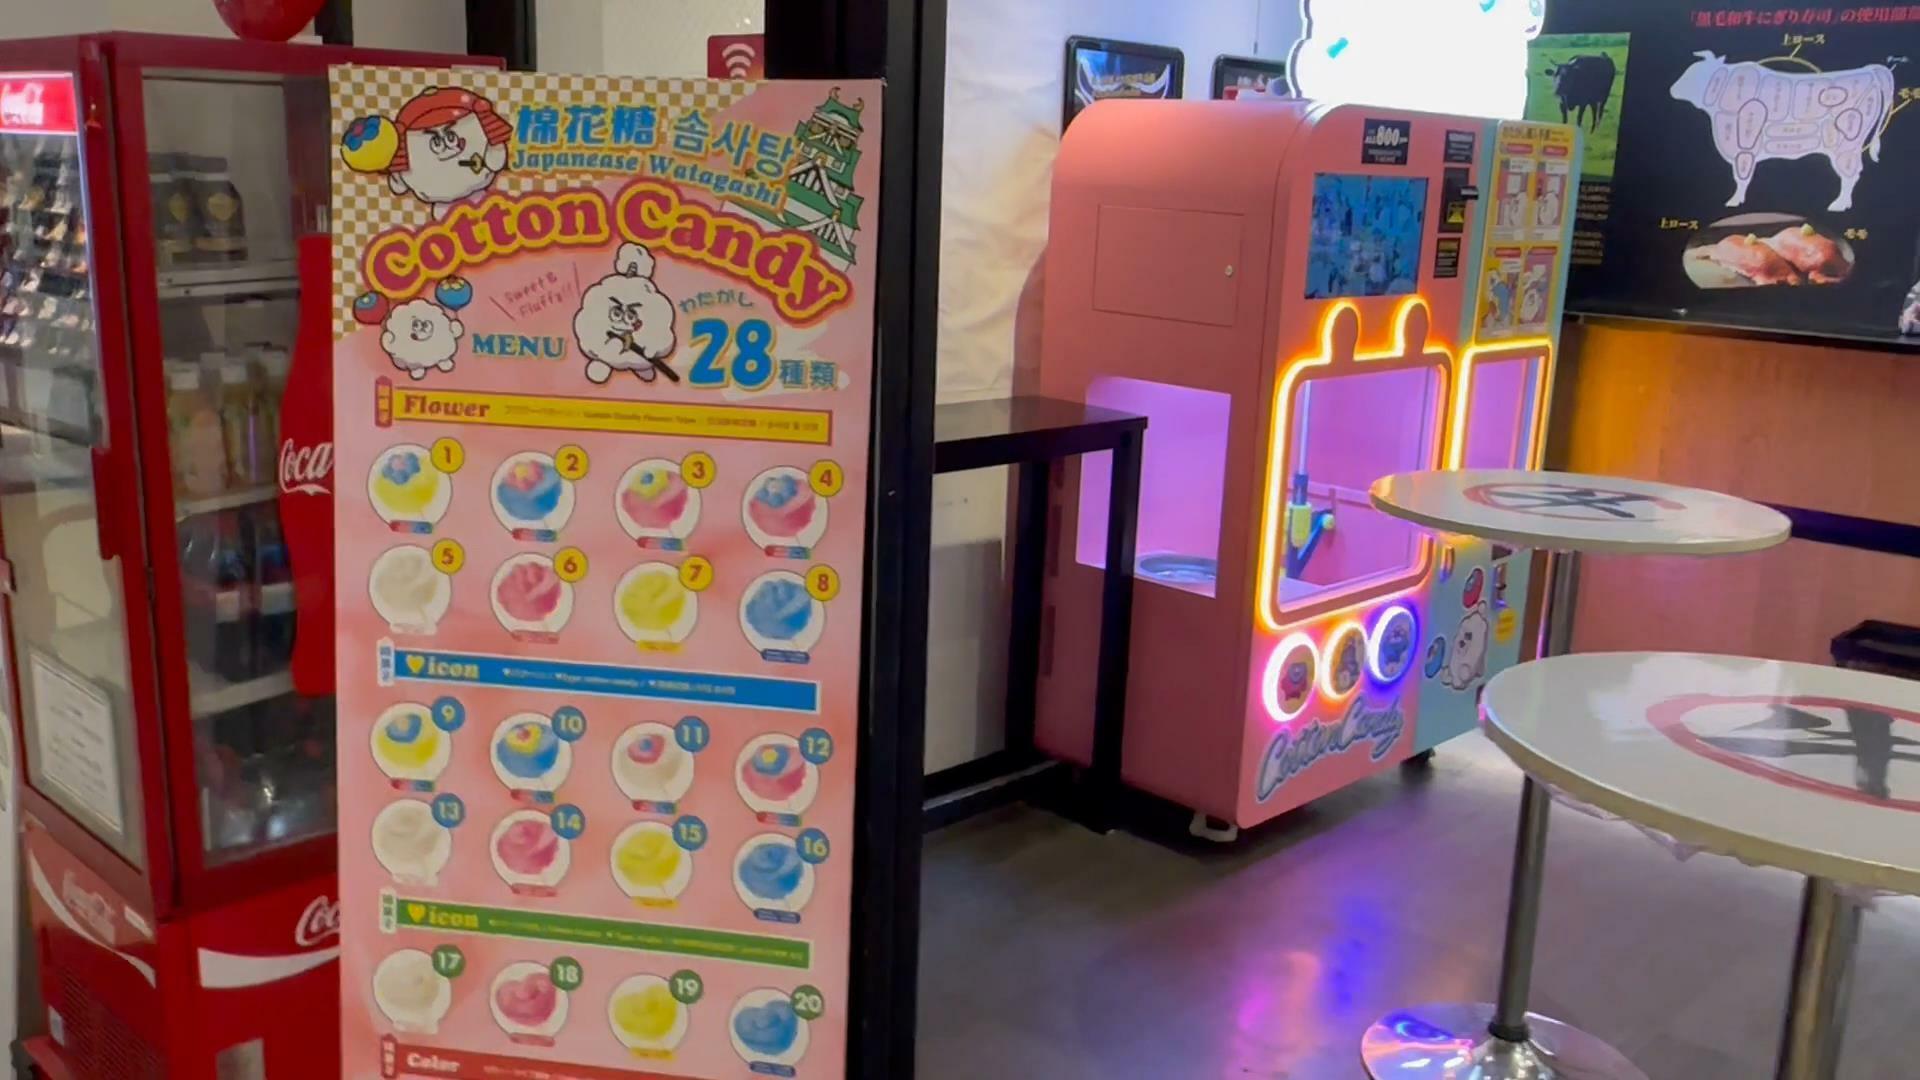 ミライザ大阪城の全自動わたがしマシーン　28種類のコットンキャンディの説明看板